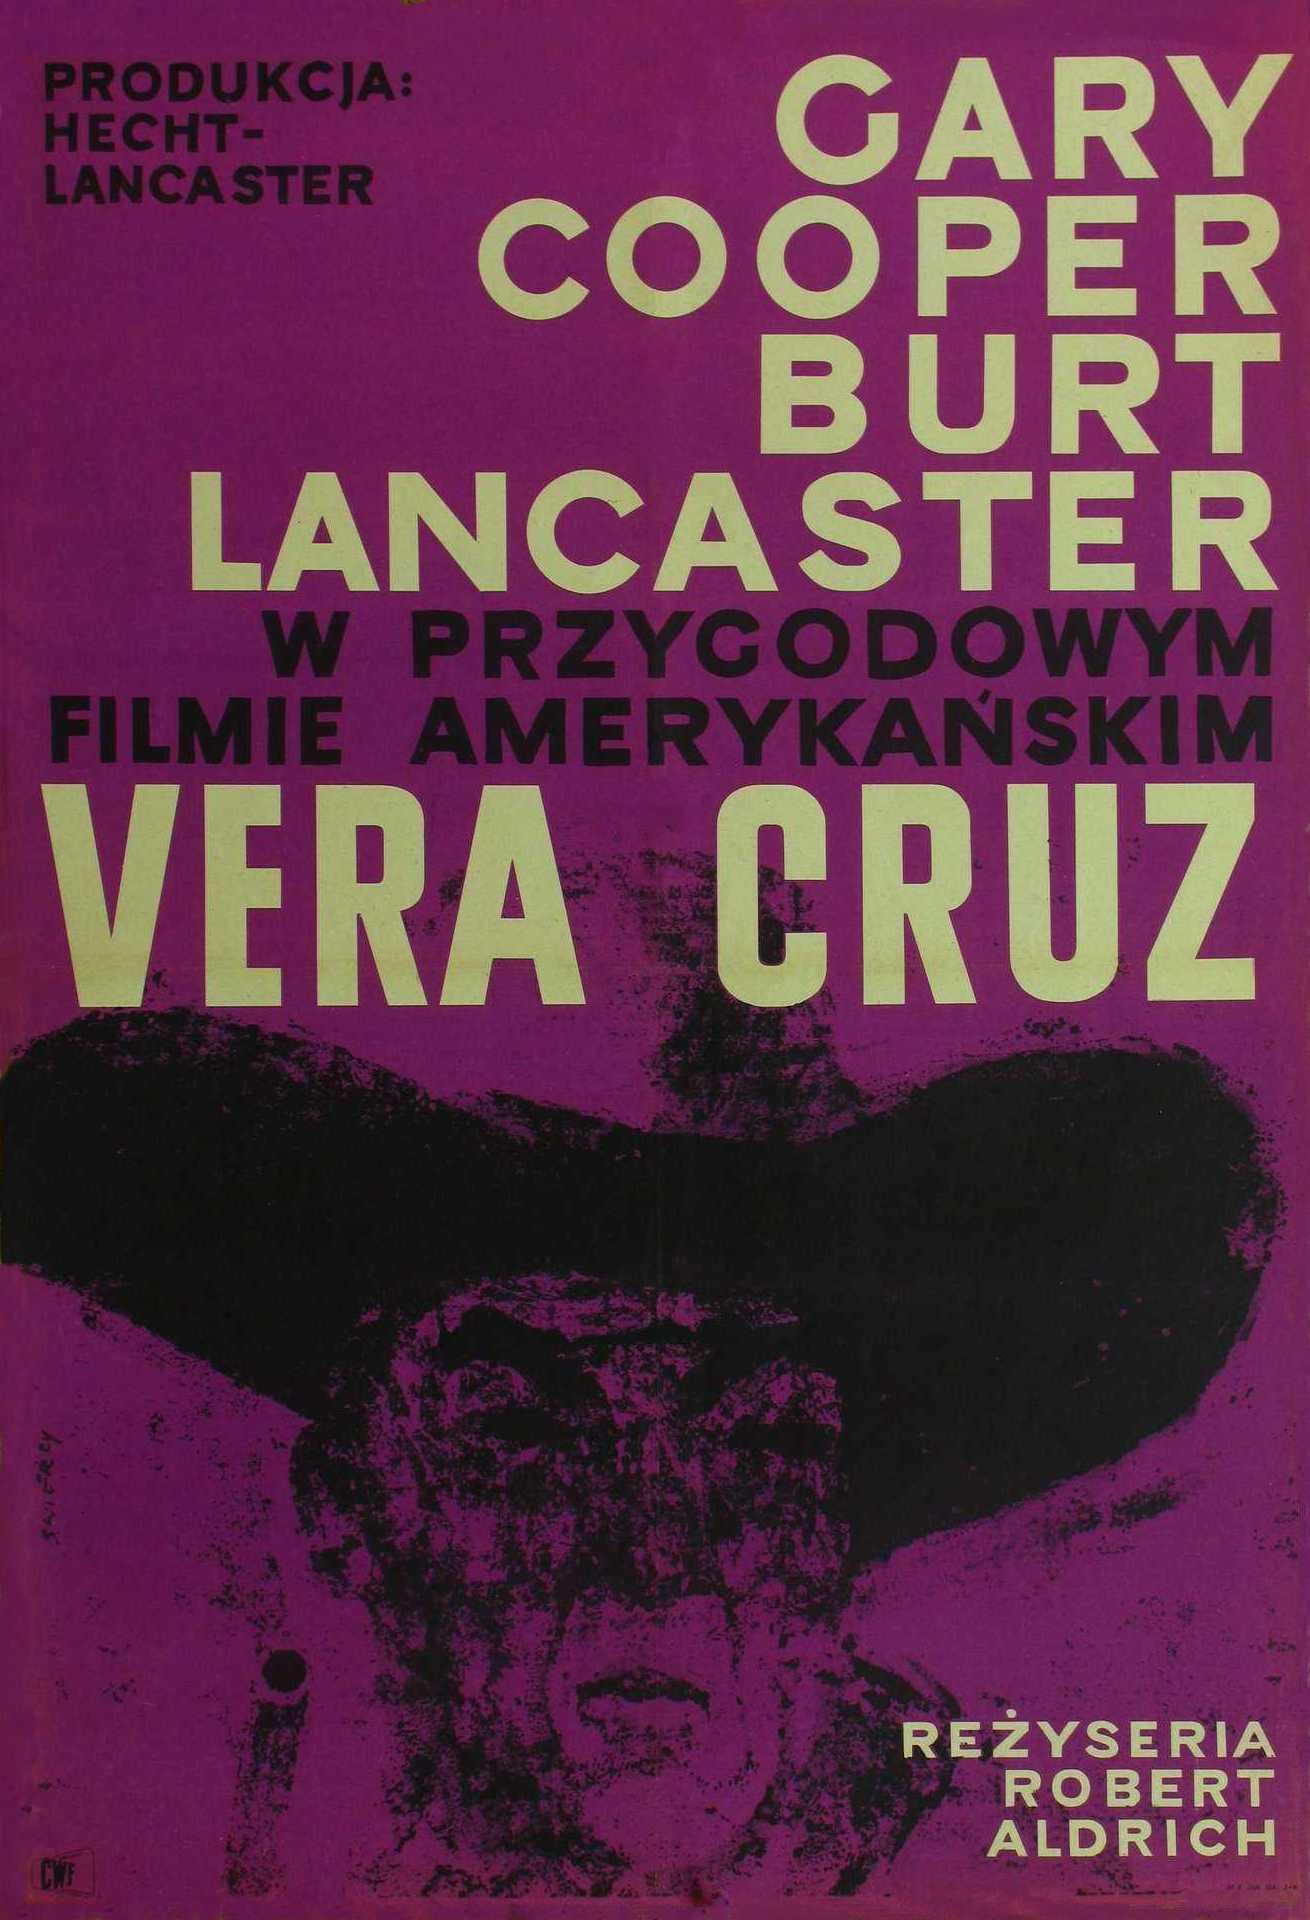 Постер фильма Вера Круз | Vera Cruz